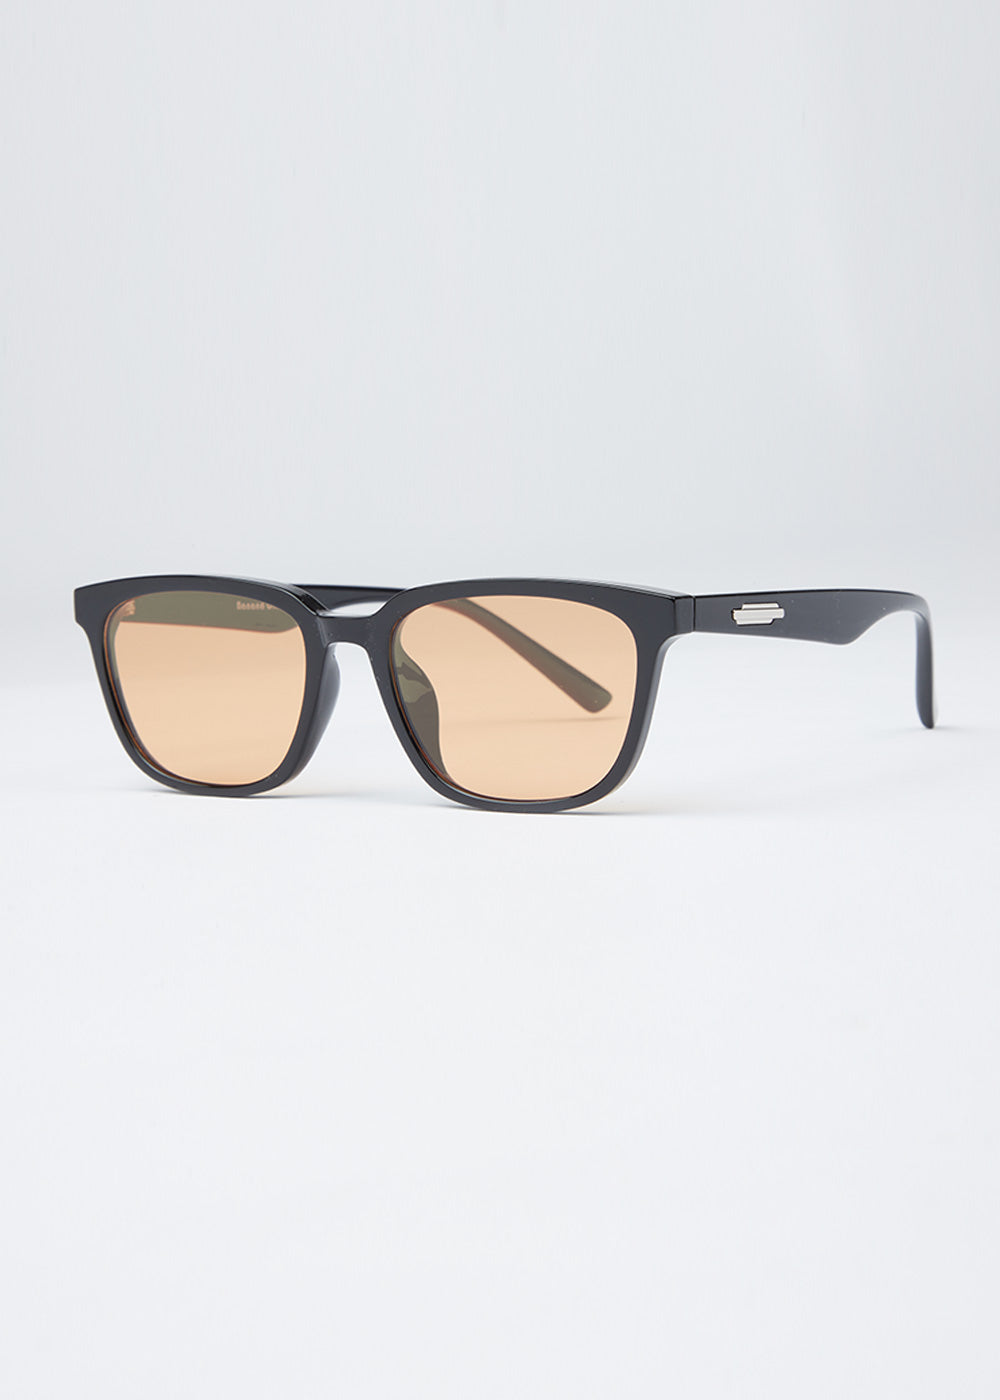 Sunlit Unisex Square Sunglasses